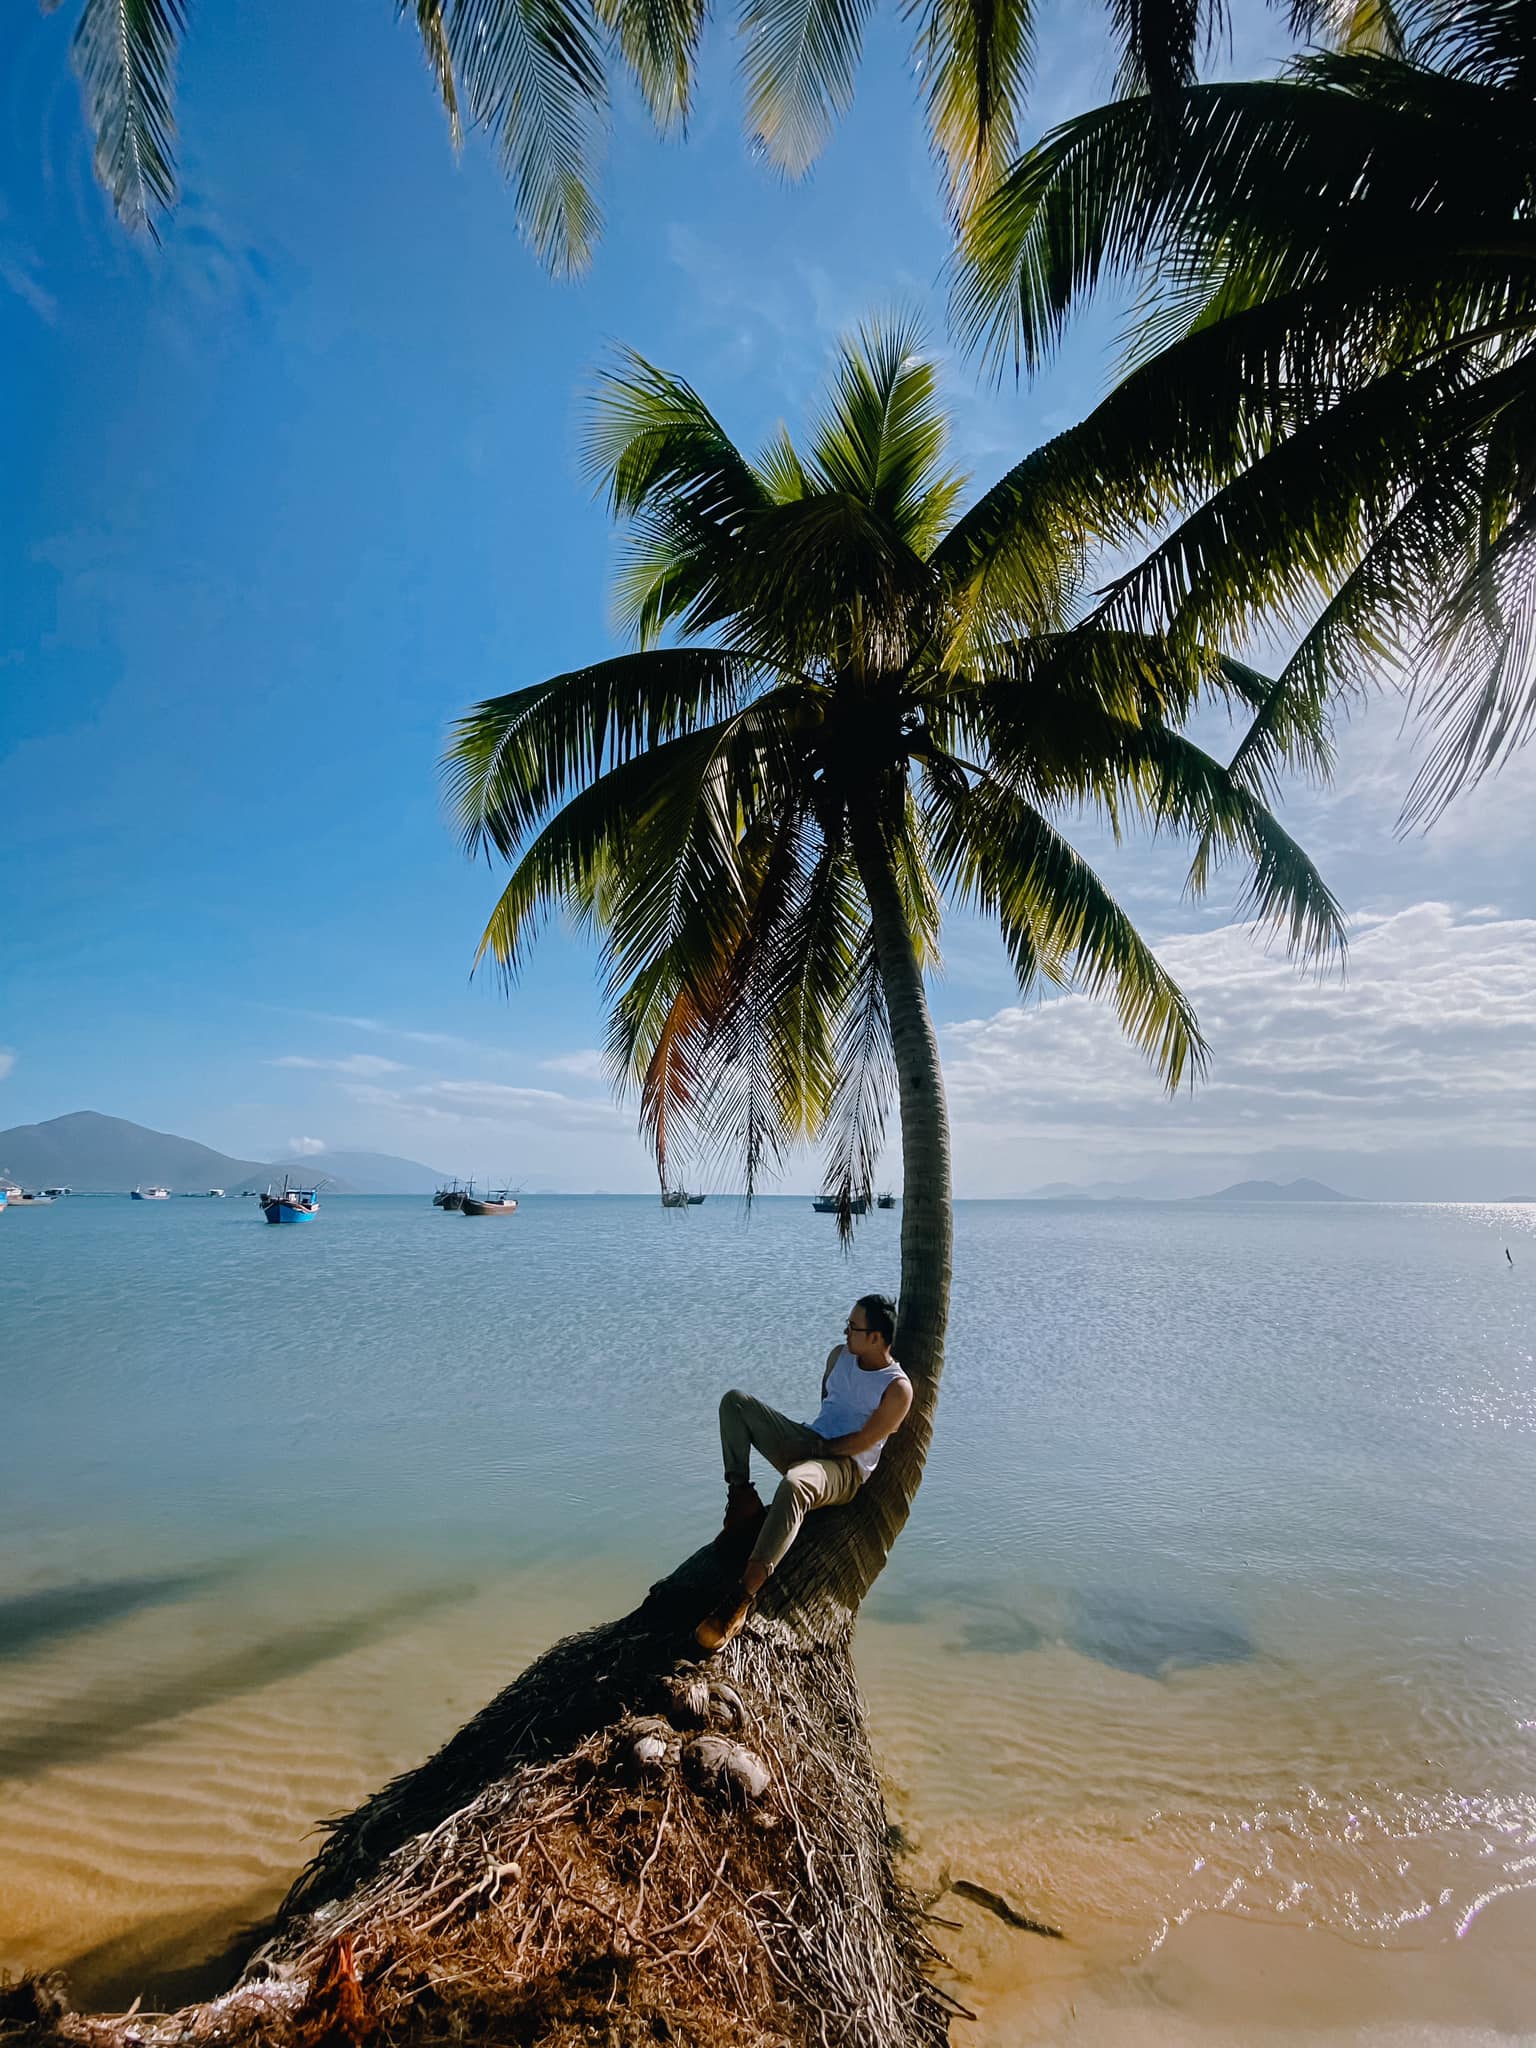 Khám phá vẻ đẹp độc đáo của đảo Điệp Sơn - Nha Trang qua bộ ảnh của Cường Quốc Phạm 13